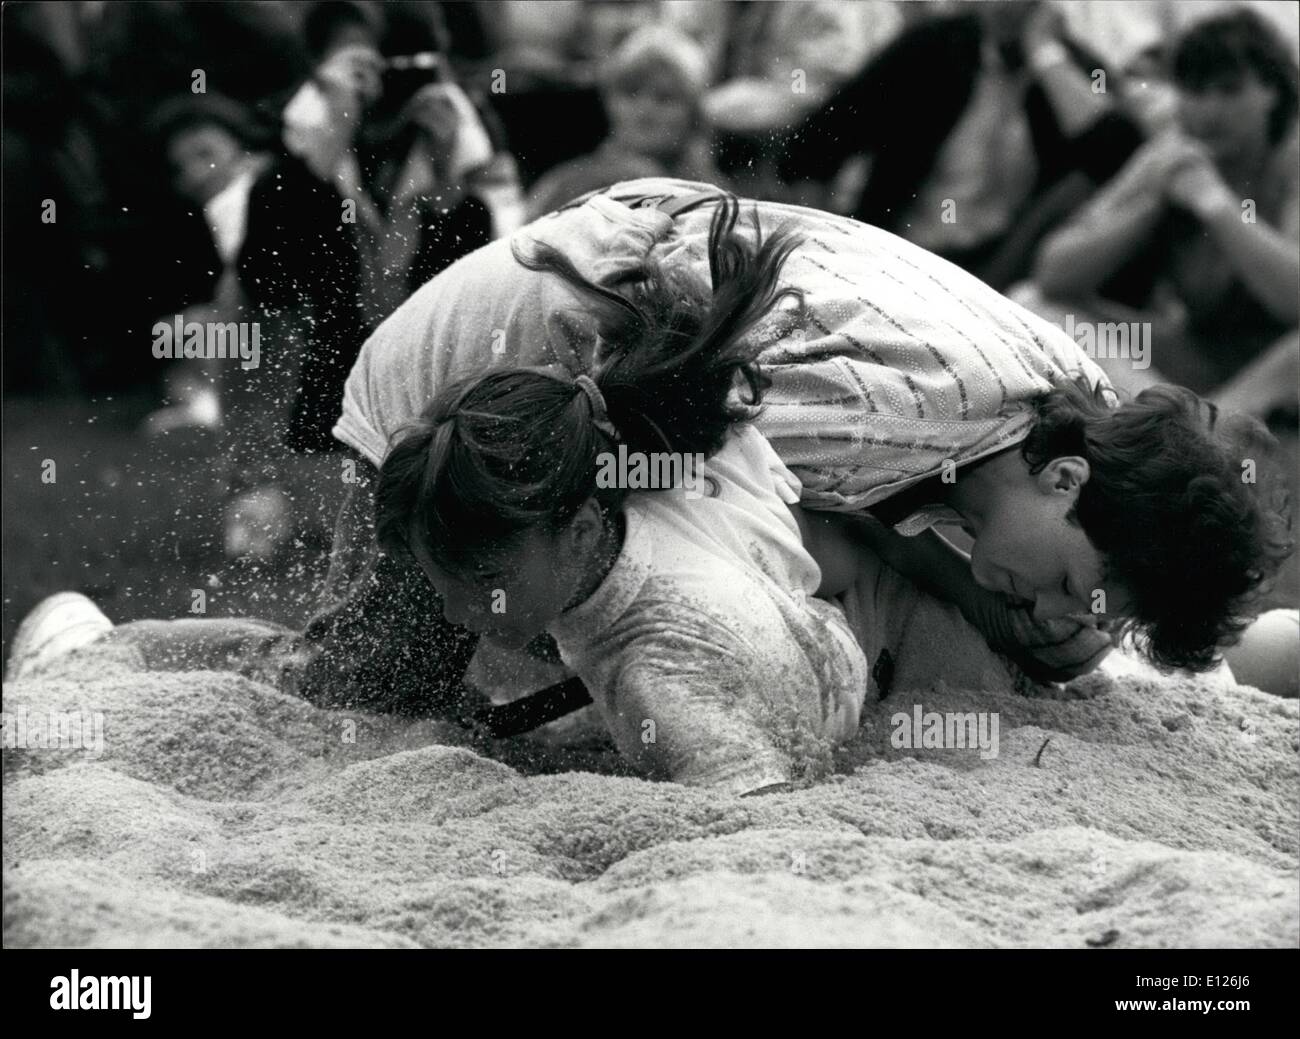 Avril 04, 1990 - Lutte des femmes Swiss Style : Ruth Ganath (en queue) et Netty Kalin ici s'engagent dans un match de lutte de style suisse dans une compétition féminine de Oberageri, 30 septembre. Traditionnellement, la lutte est un sport pour hommes seulement. Banque D'Images